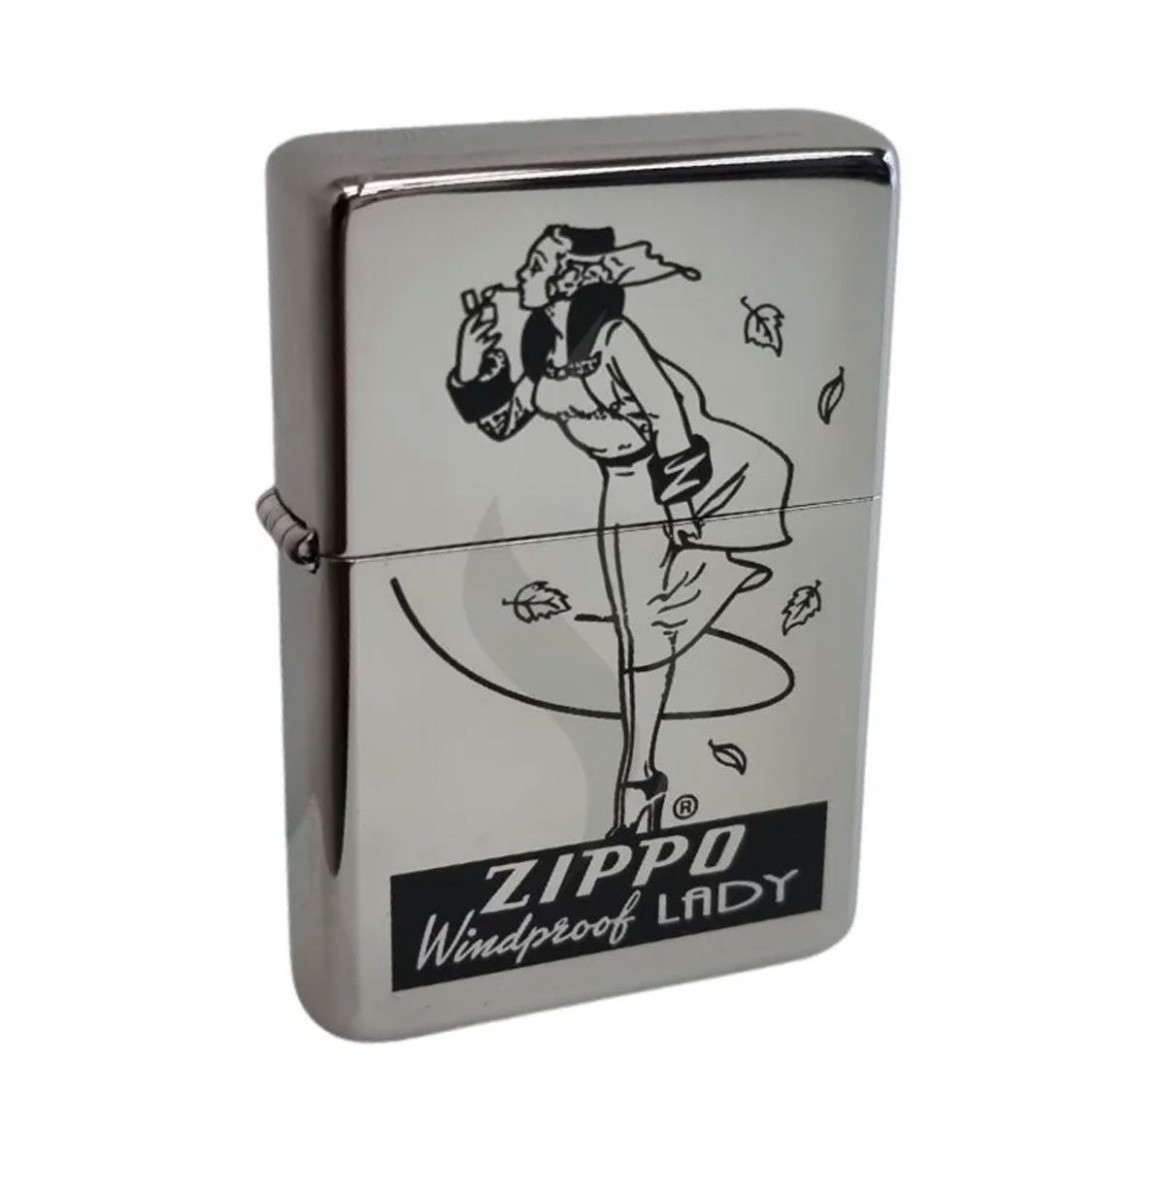 Zippo Vintage Windproof Lady Aansteker